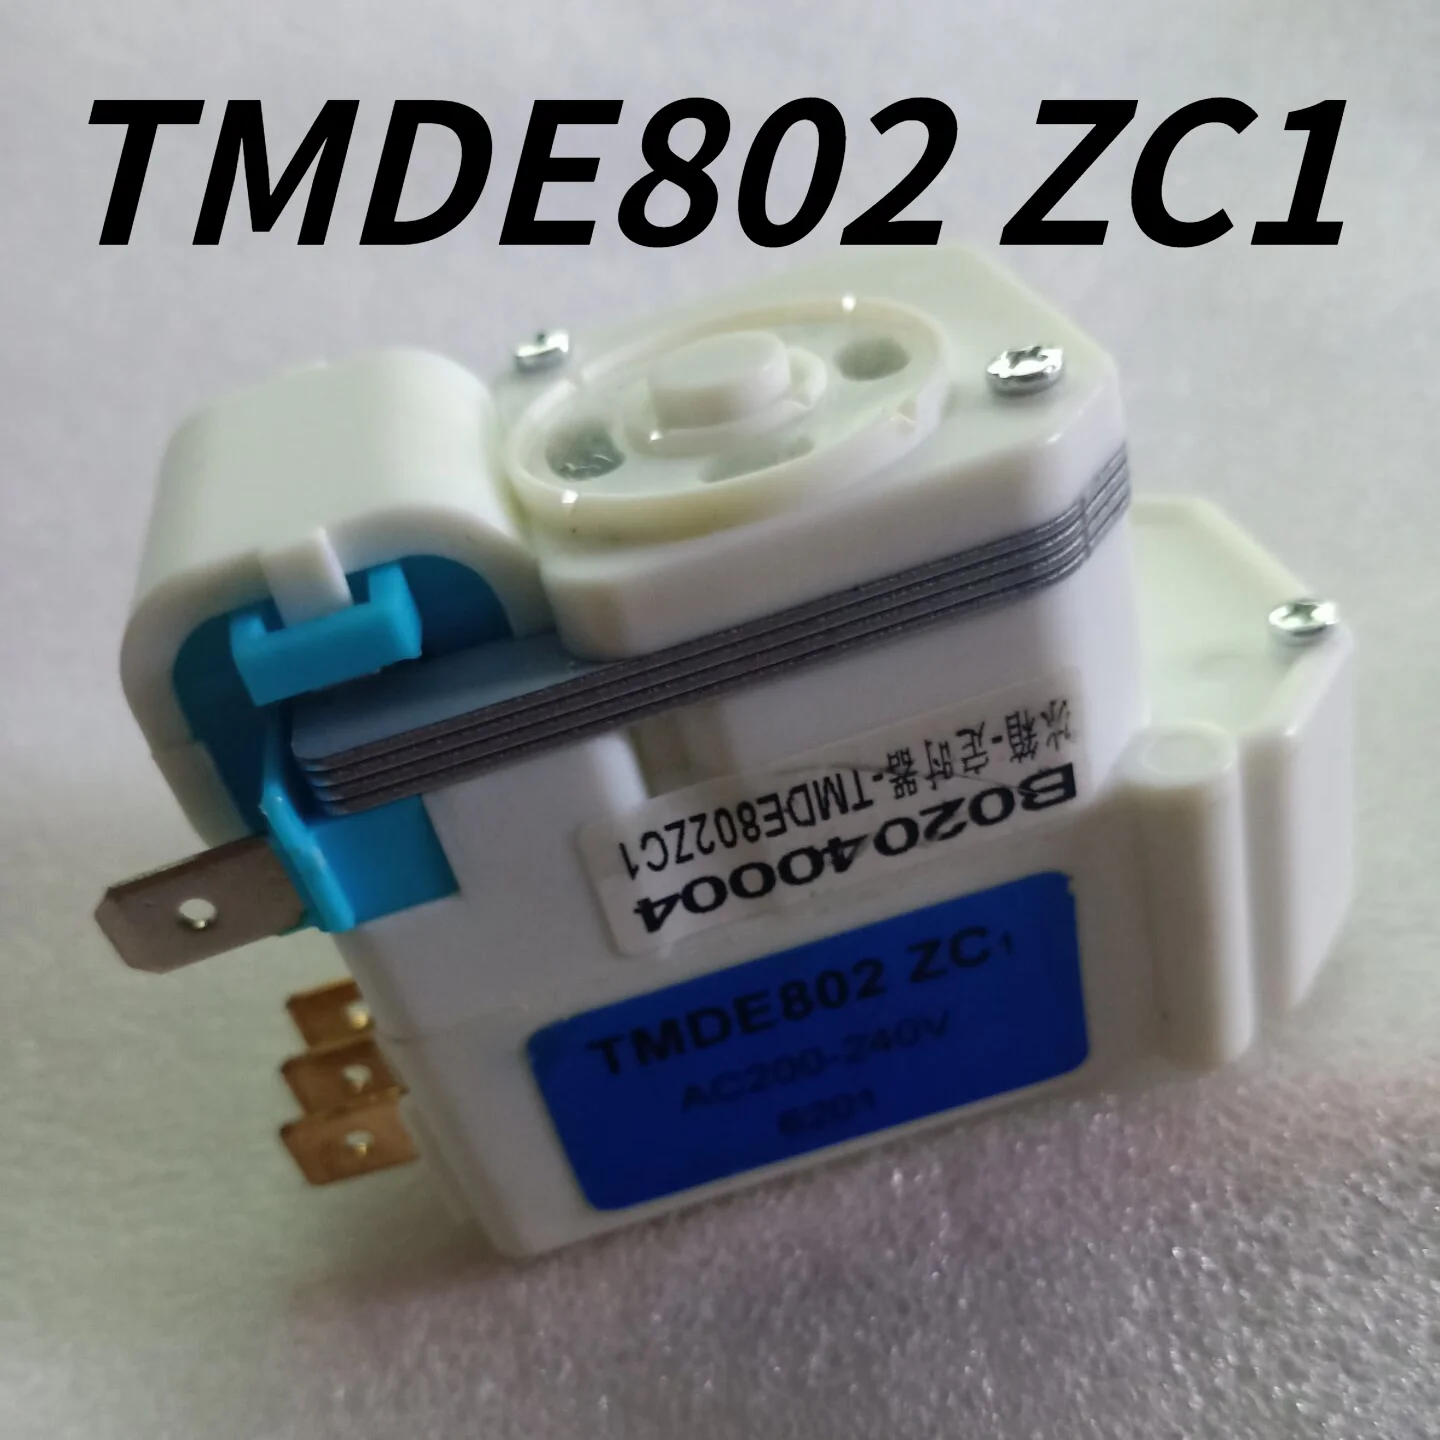 defrost timer Universal sankyo TMDEX09UM1, AC 200-240V TMDE802ZC1 3018100310 H.J Daewoo cooler For all 220v Refrigerator Parts